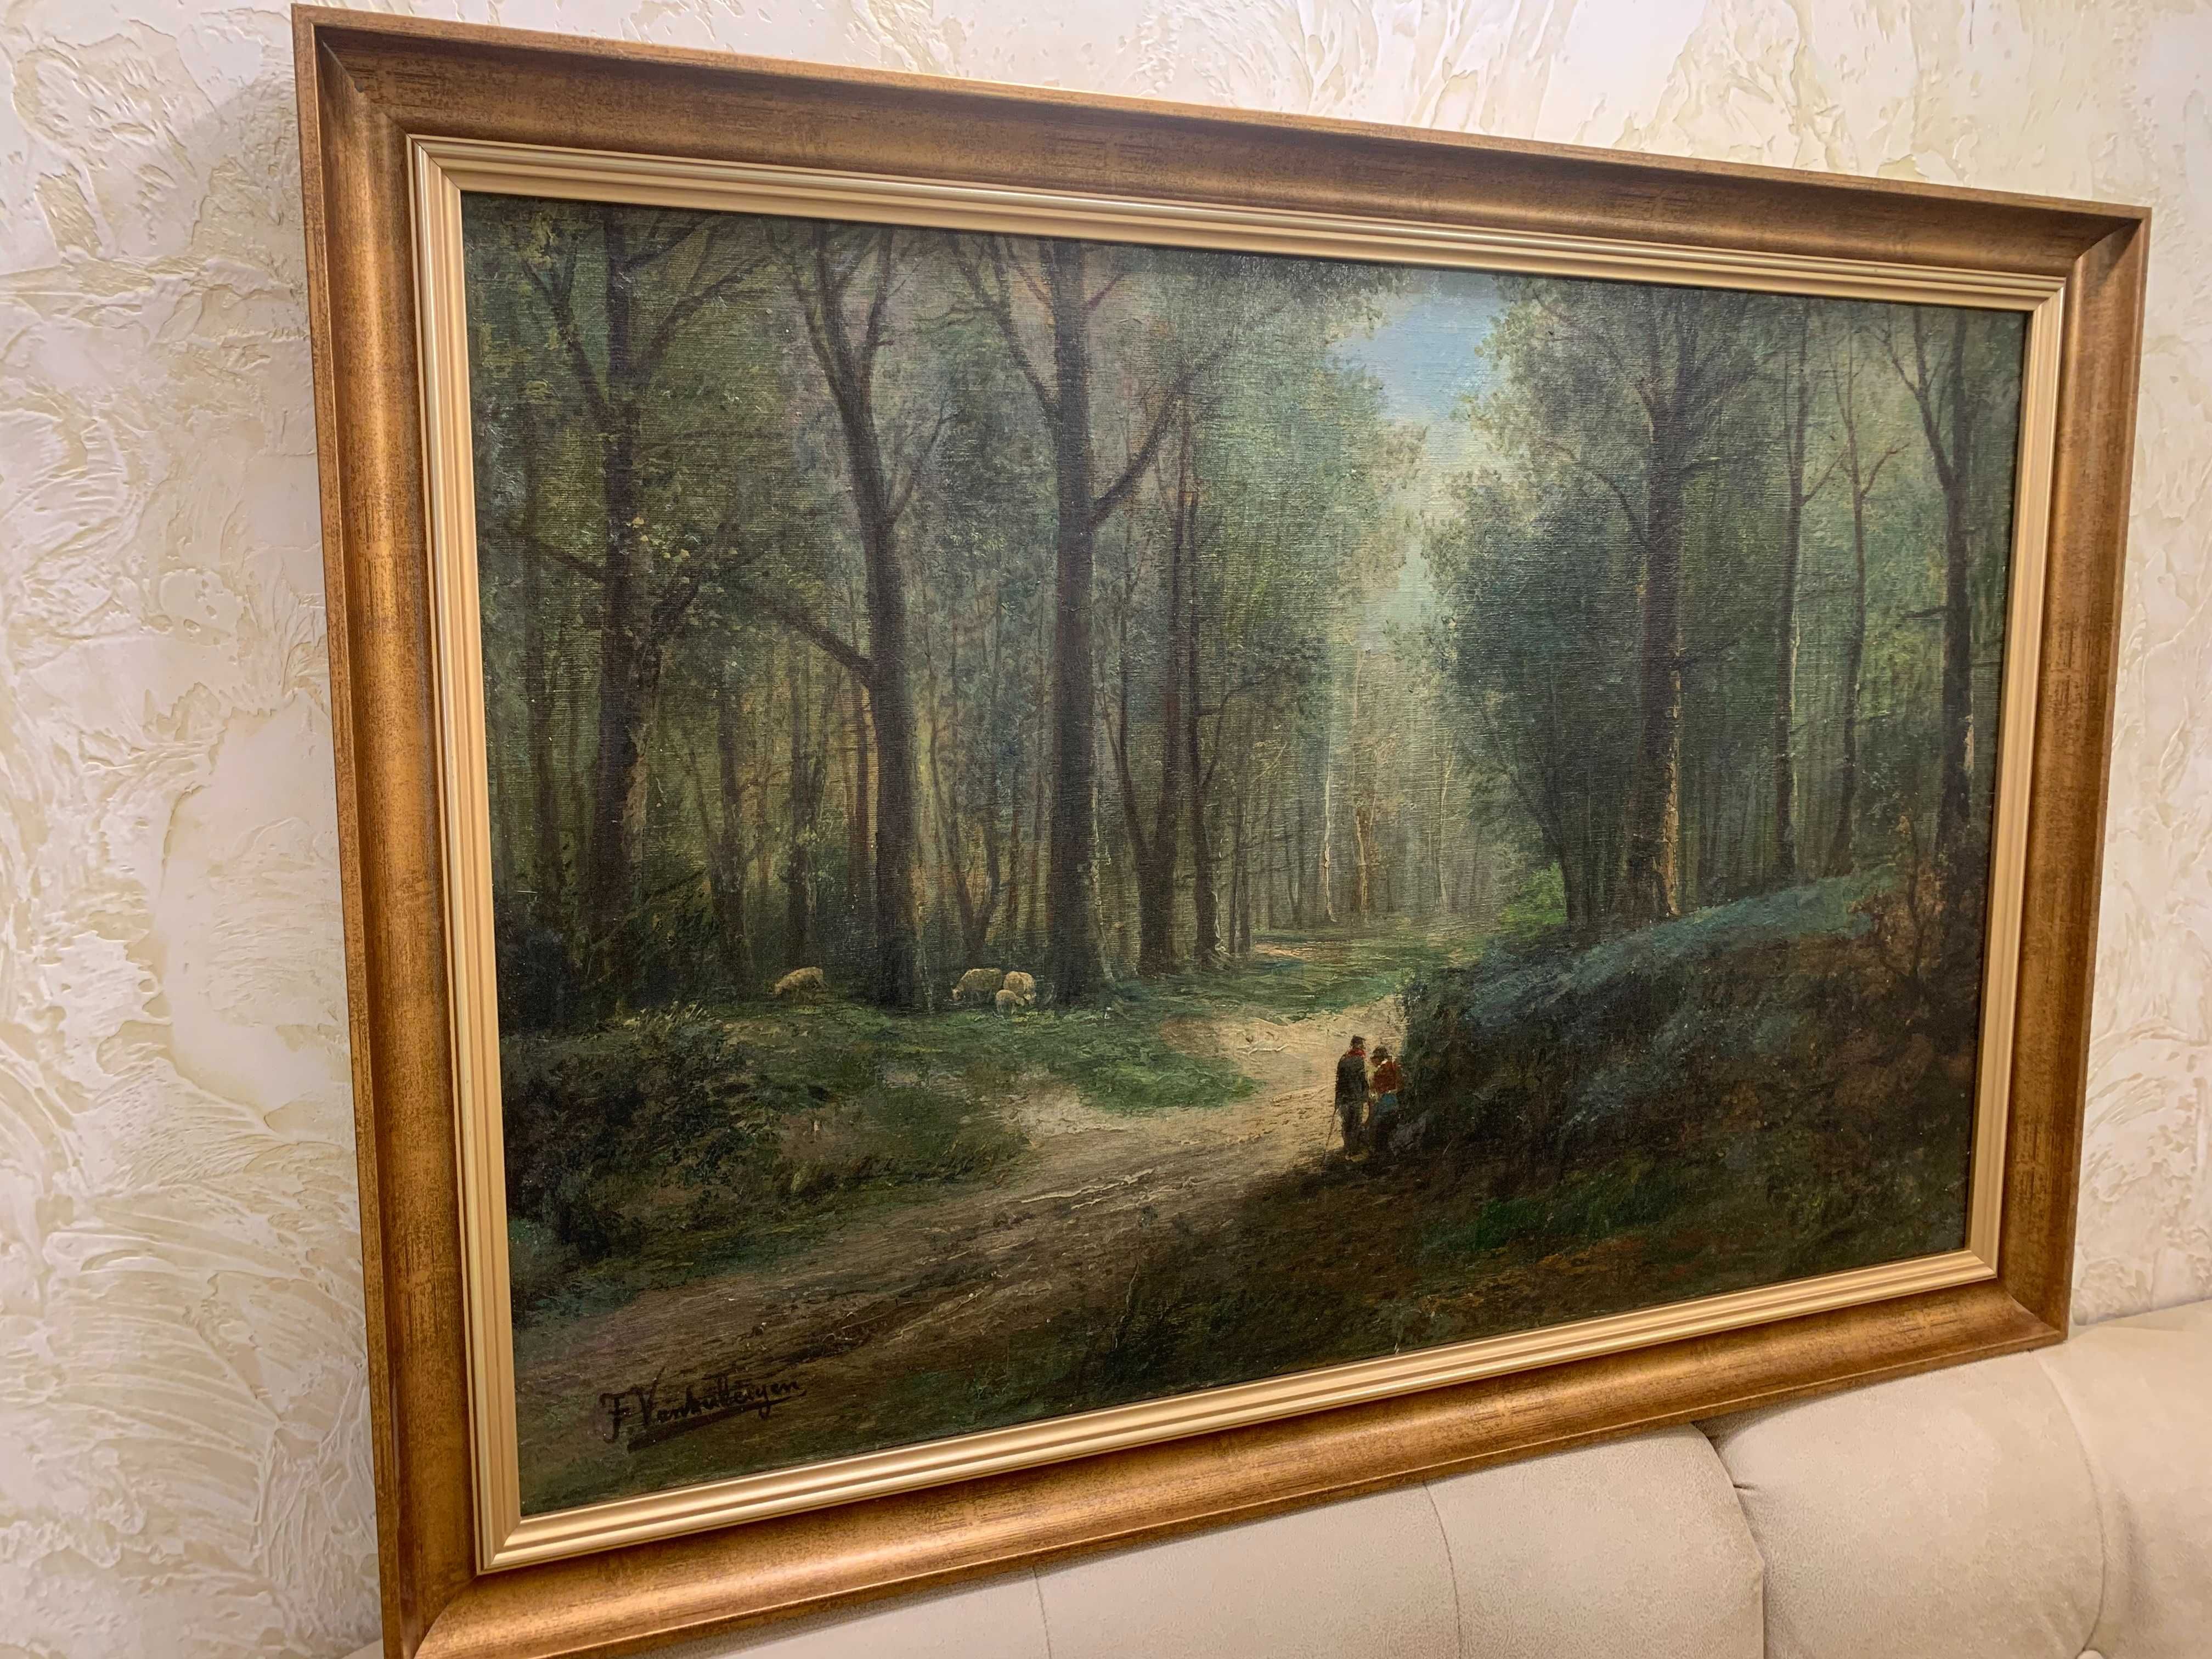 Картина"Дорога в лісі"19 ст.з підп.худ.Олія на полотні.Розм.59*83см